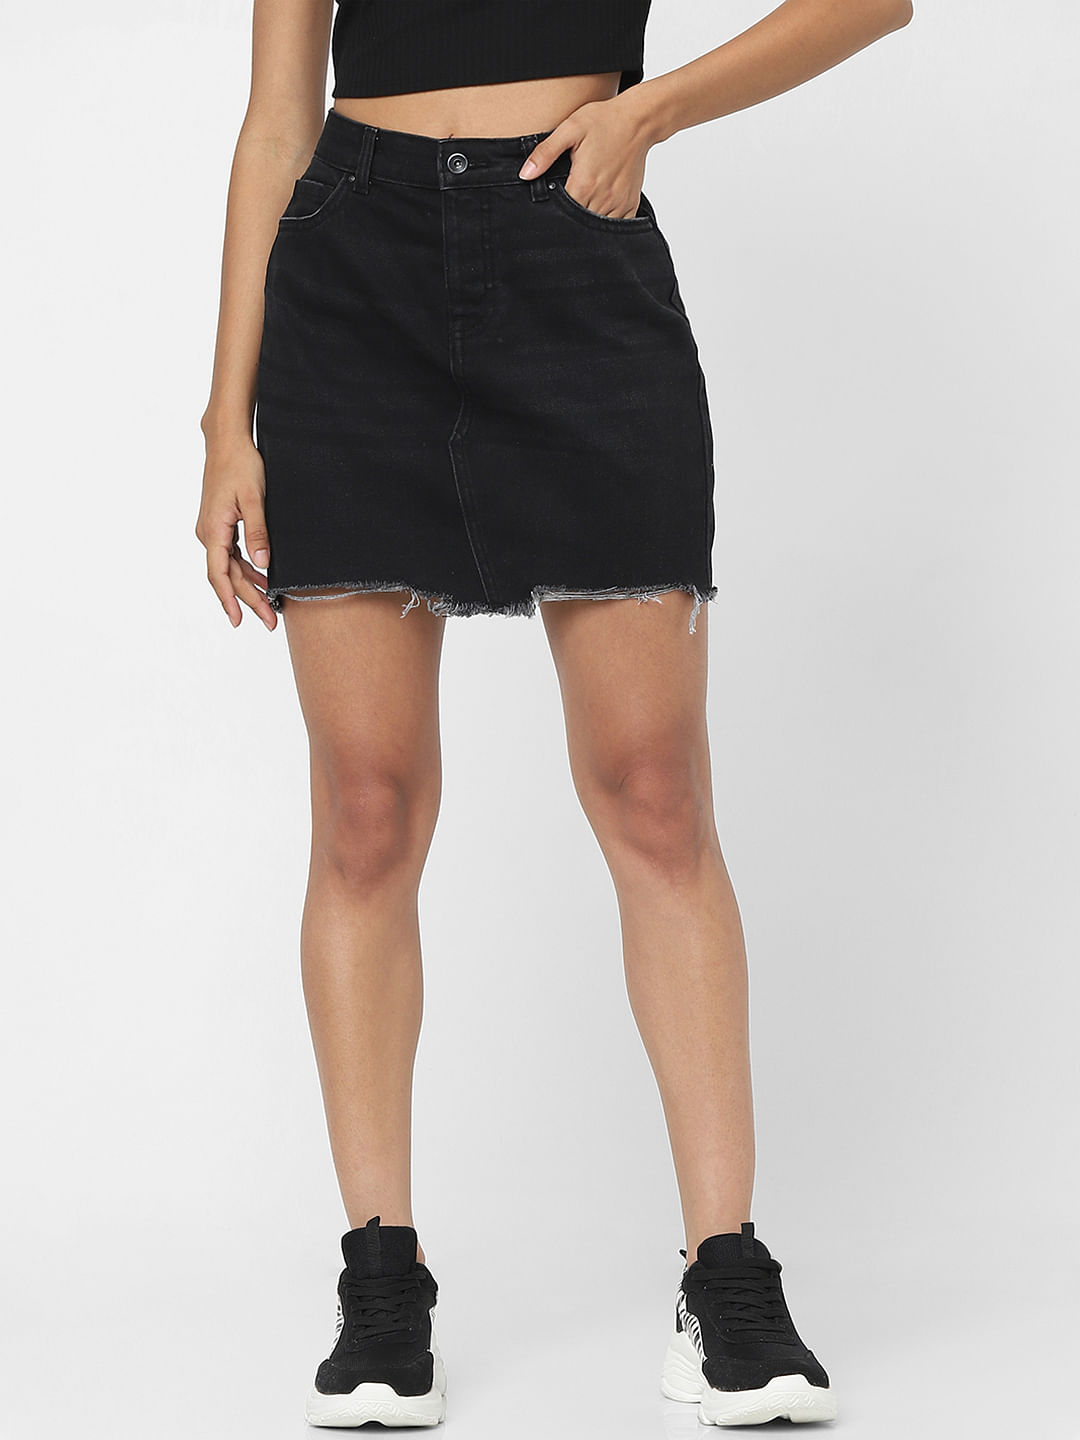 Discover 72+ black denim skirt best